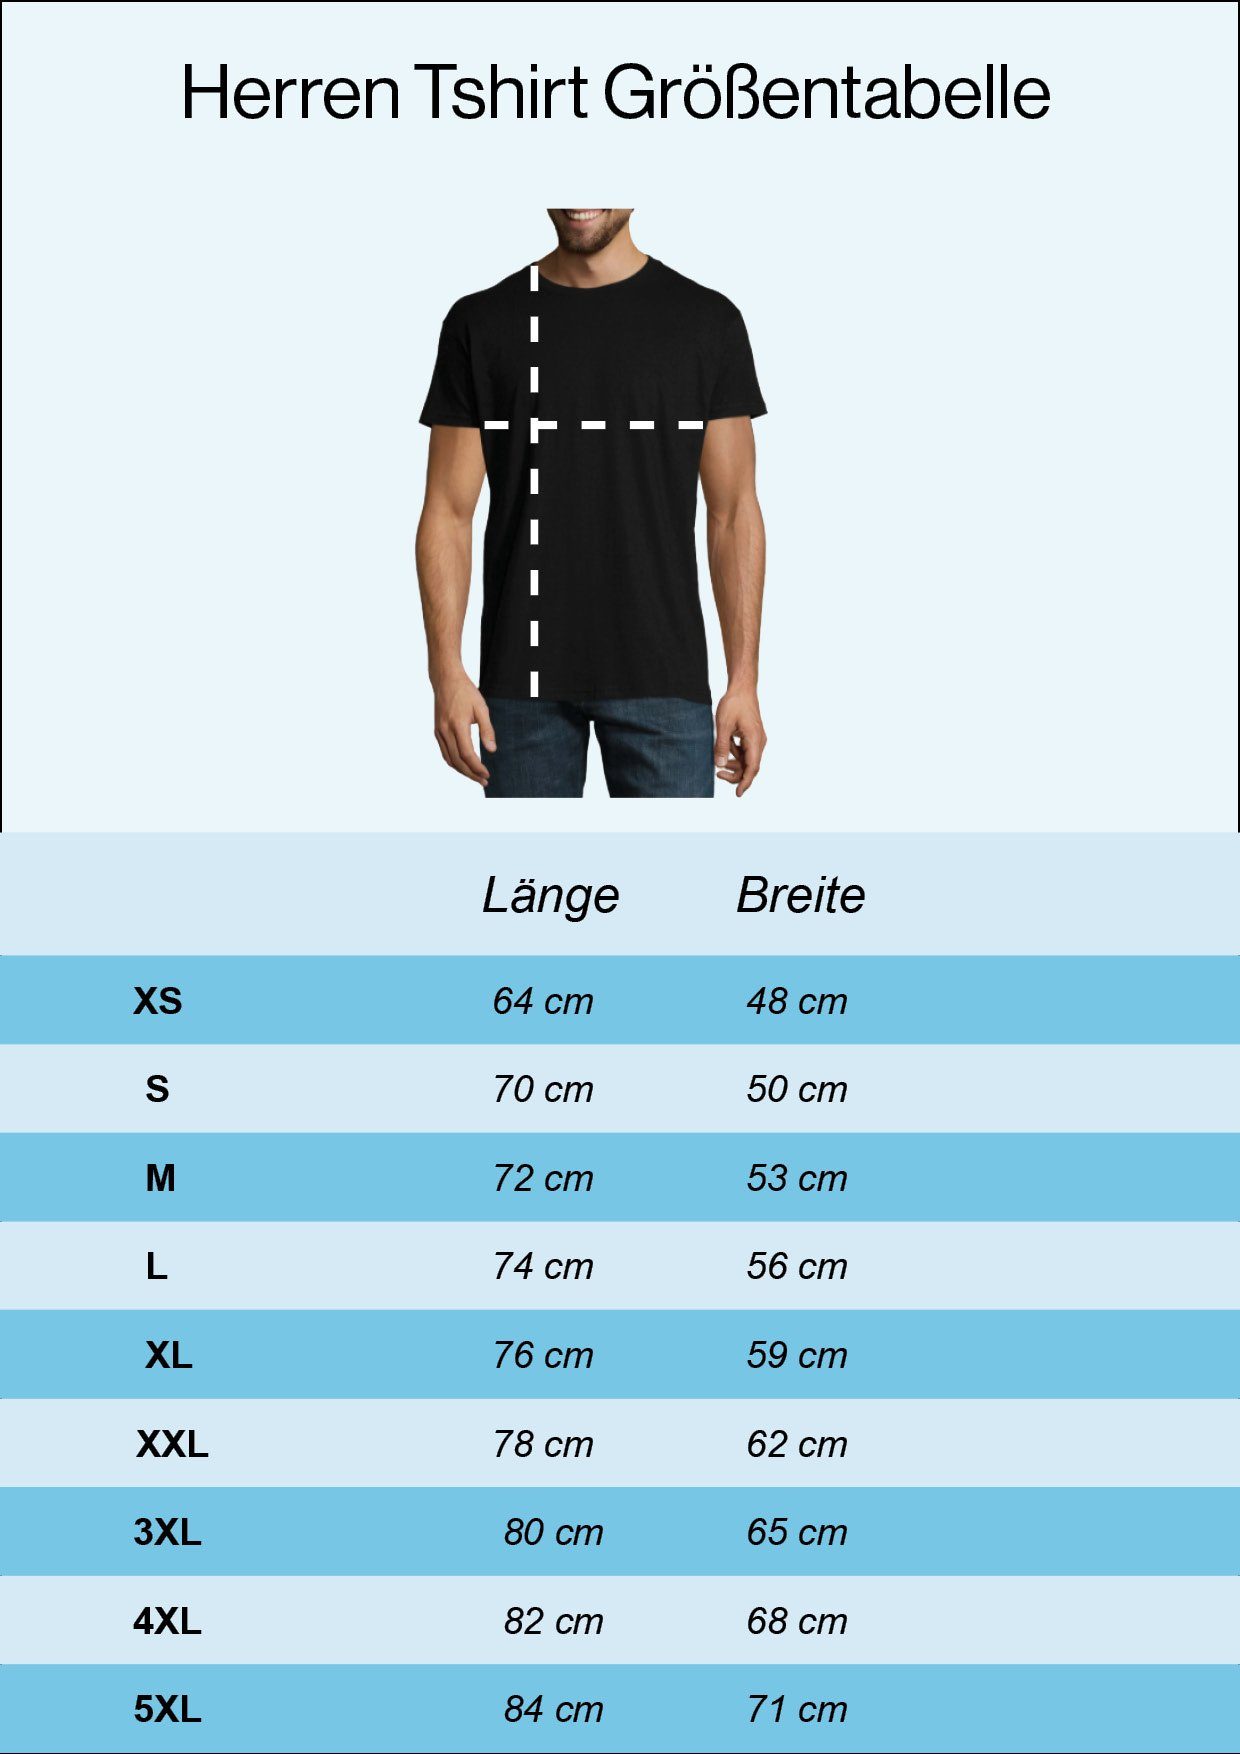 Youth Designz T-Shirt RESPECT THE Spruch lustigem Herren Burgundy BEARD mit T-Shirt